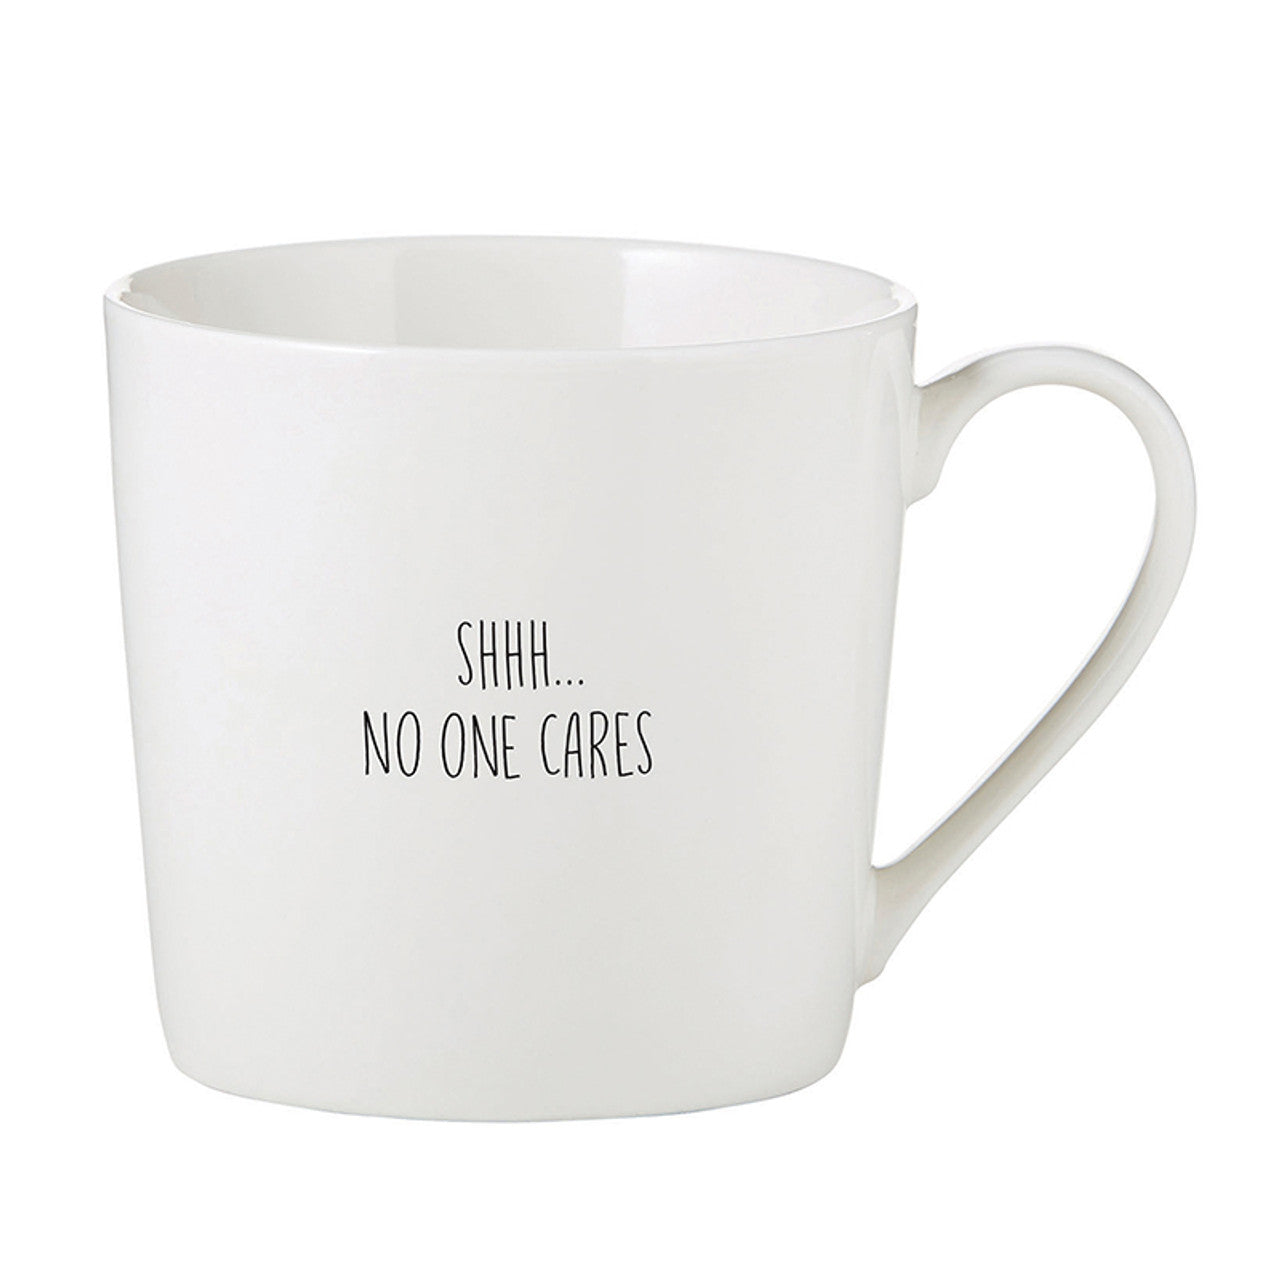 Shhh...No One Cares Coffee Mug